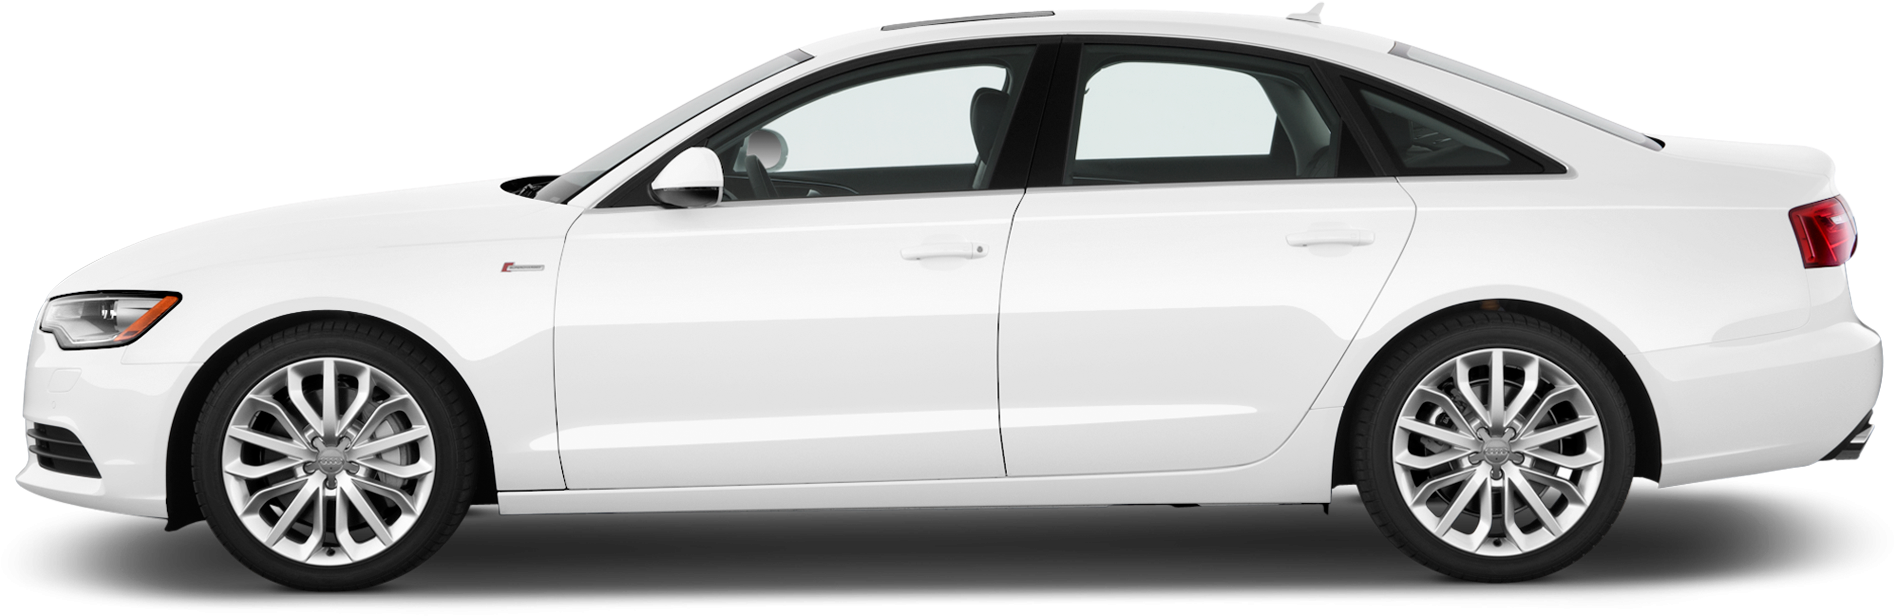 Audi blanc A6 PNG Image de haute qualité